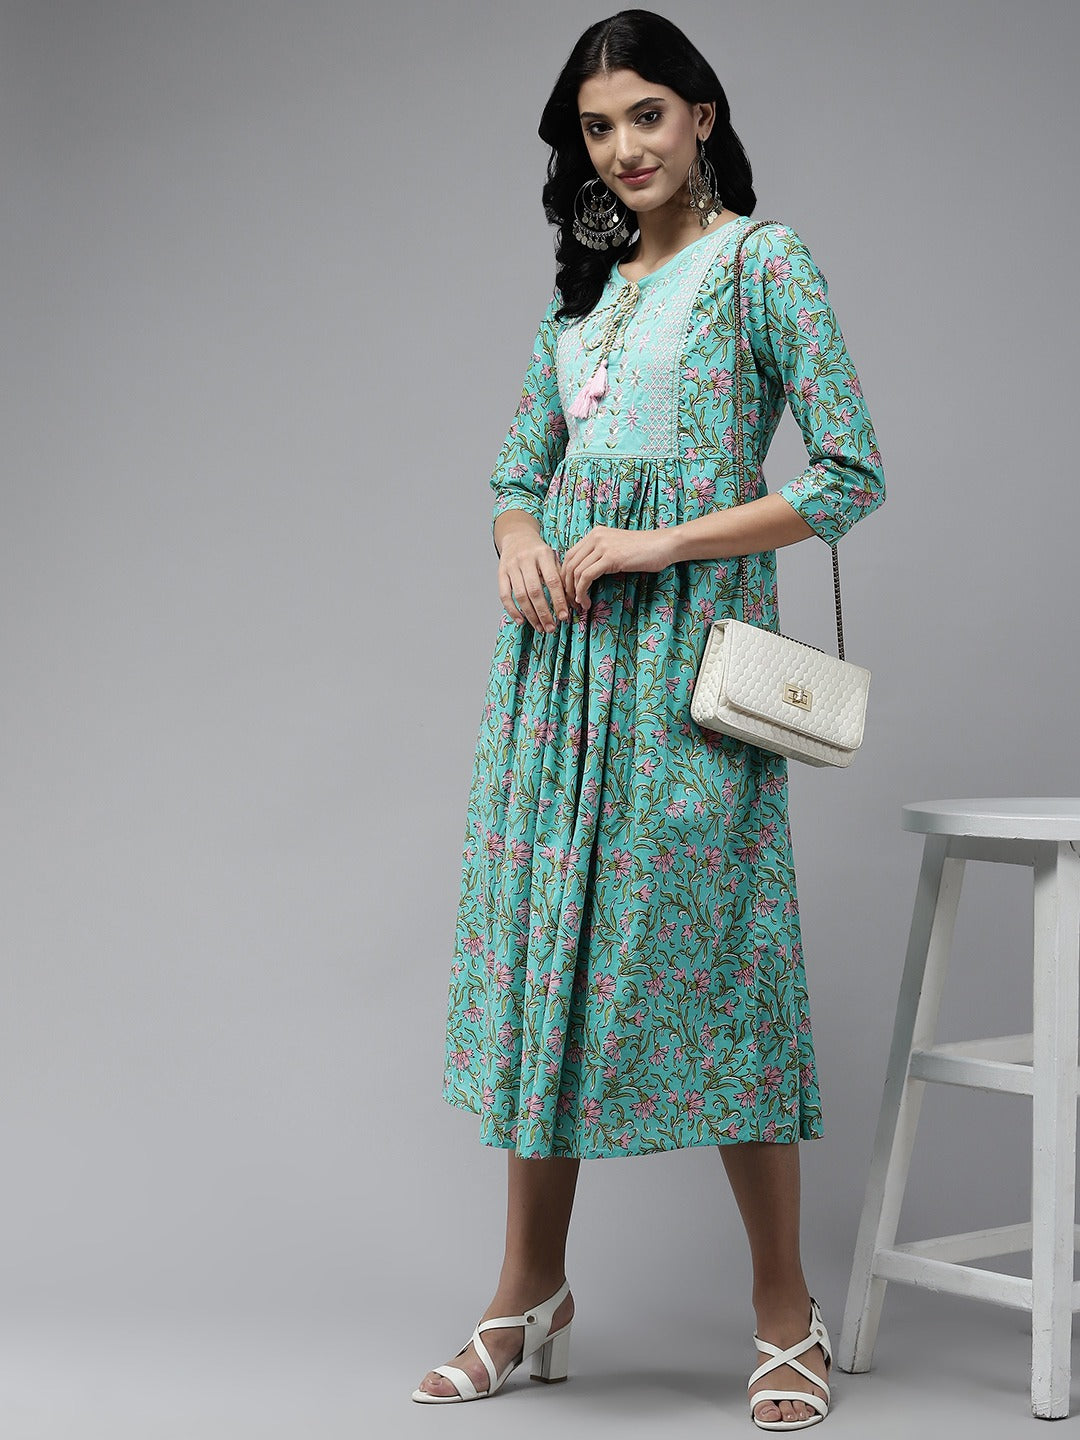 Sea Green Embroidered Midi Dress-Yufta Store-5212DRSSGS